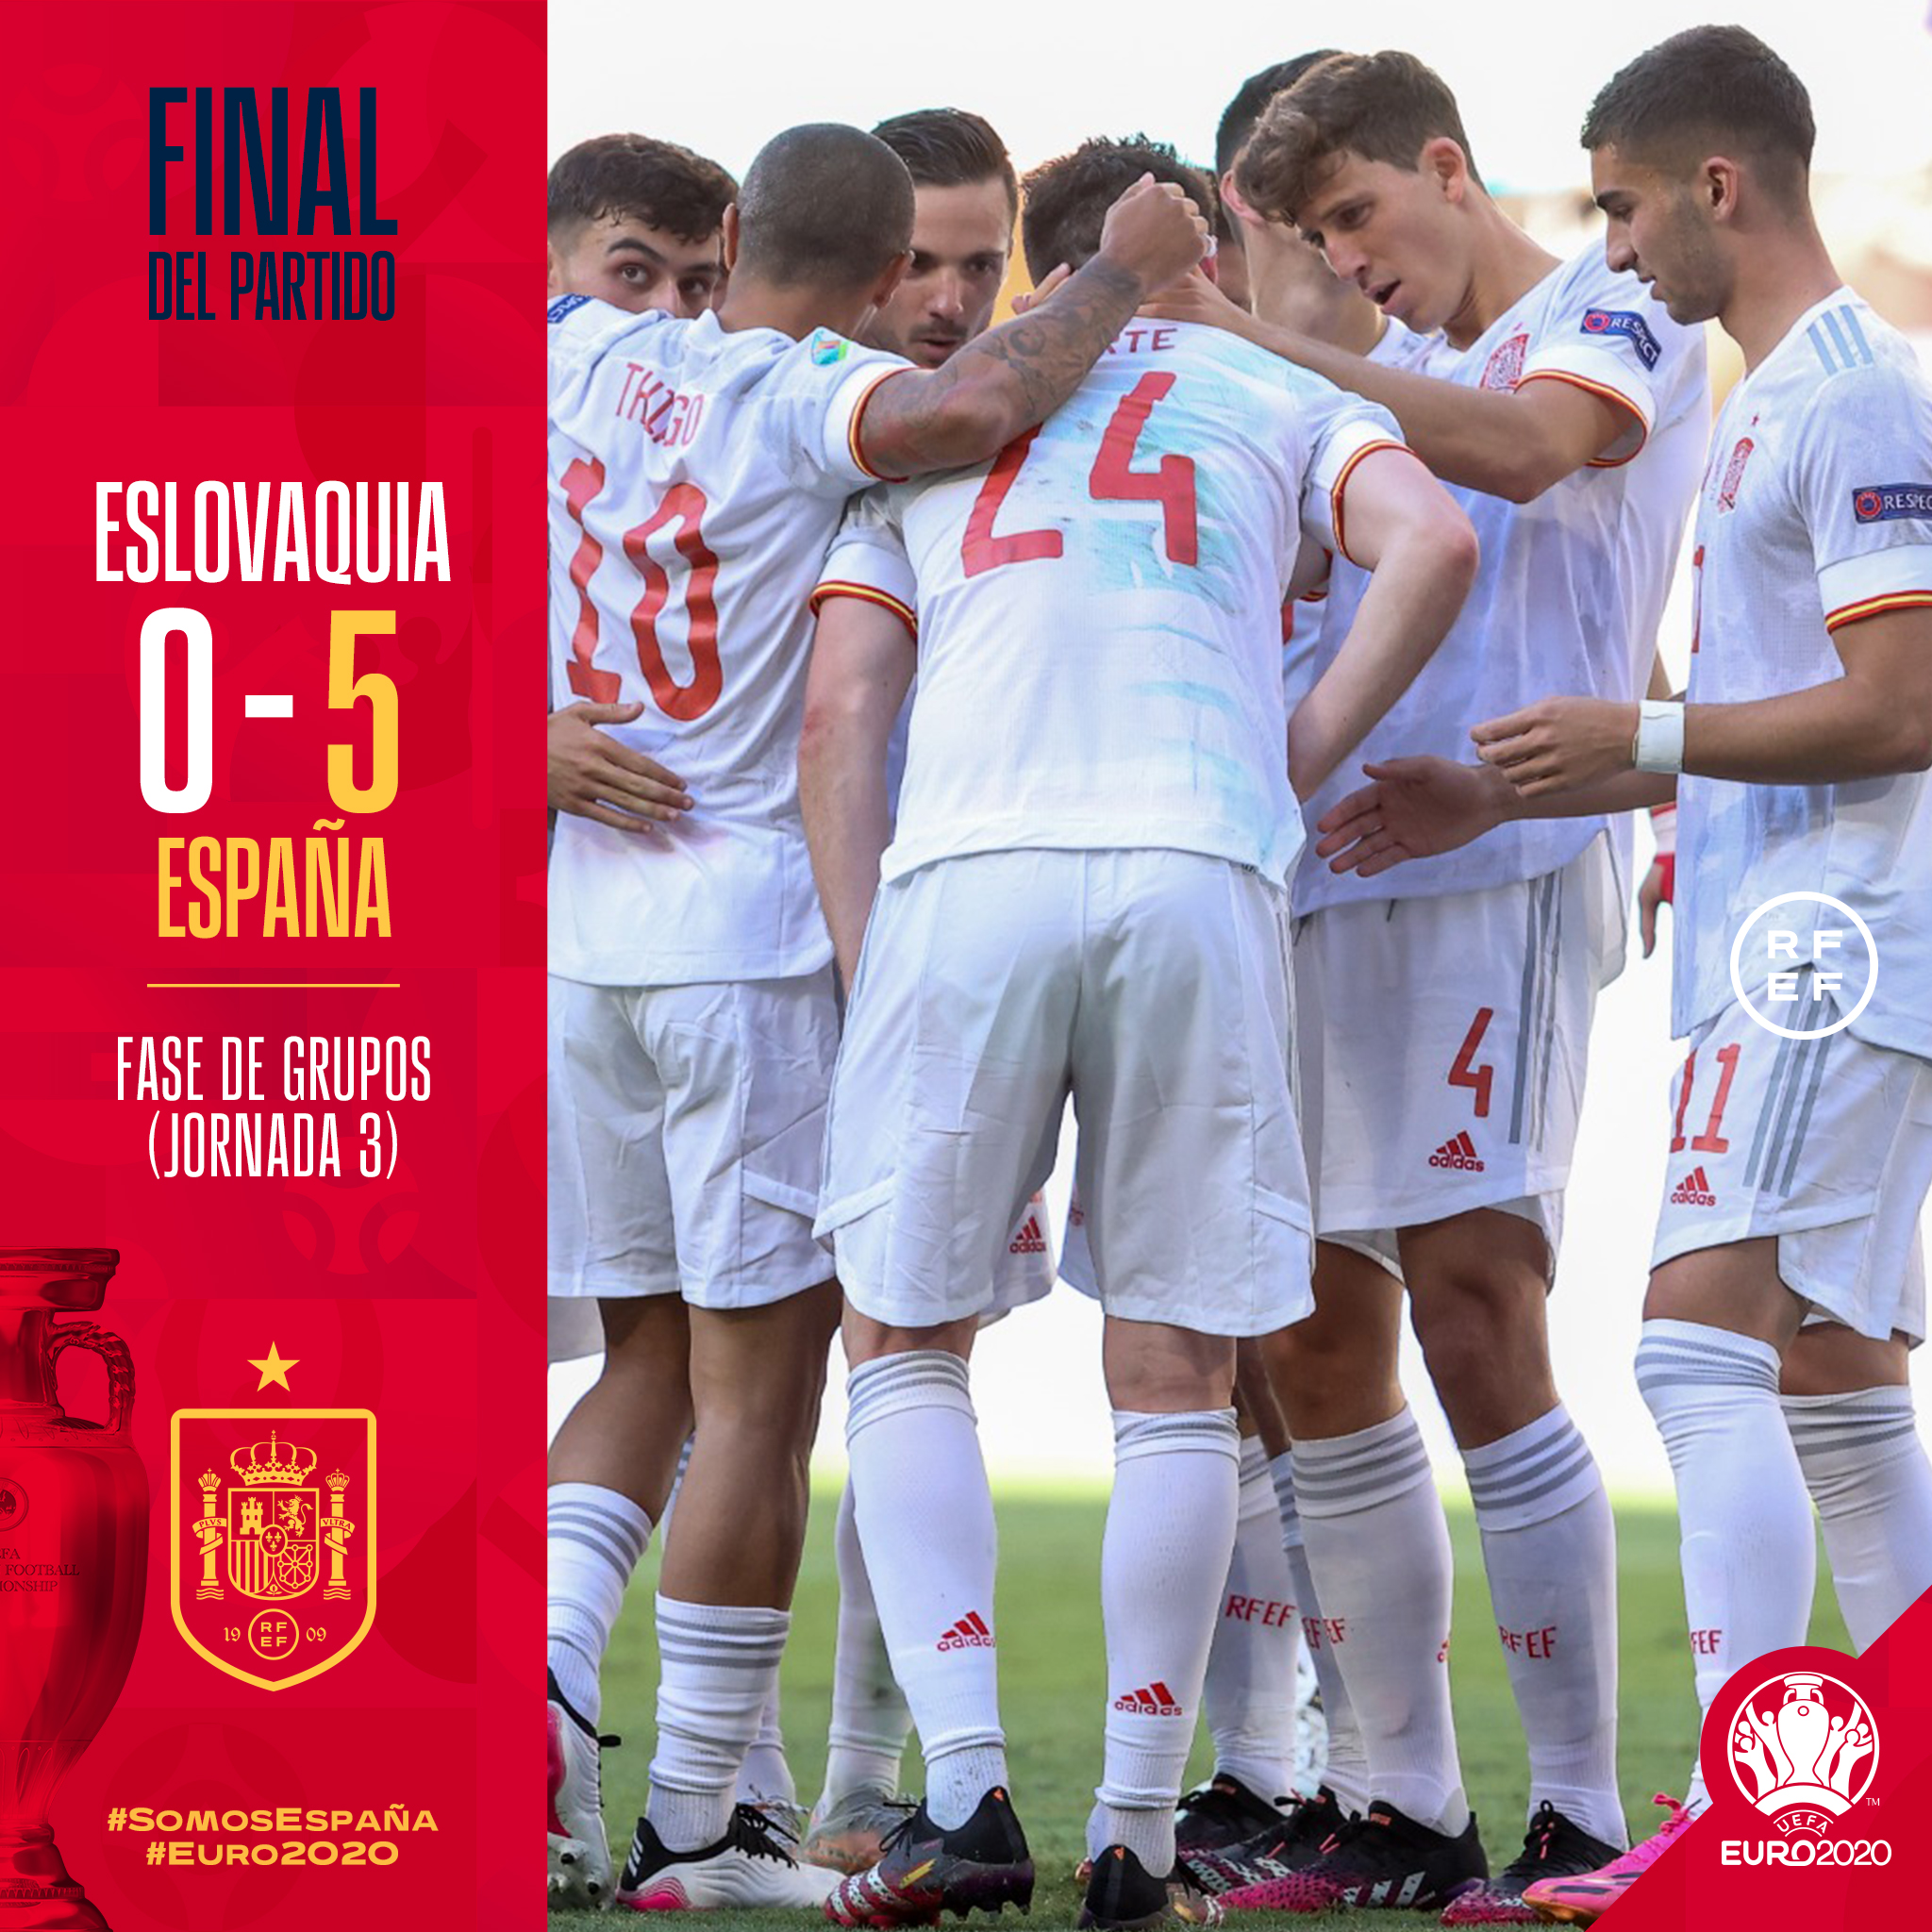 Kết quả bóng đá, tỷ số EURO 2021 hôm nay 24/06: TBN thắng lớn, Bồ Đào Nha đi tiếp nhờ vận may